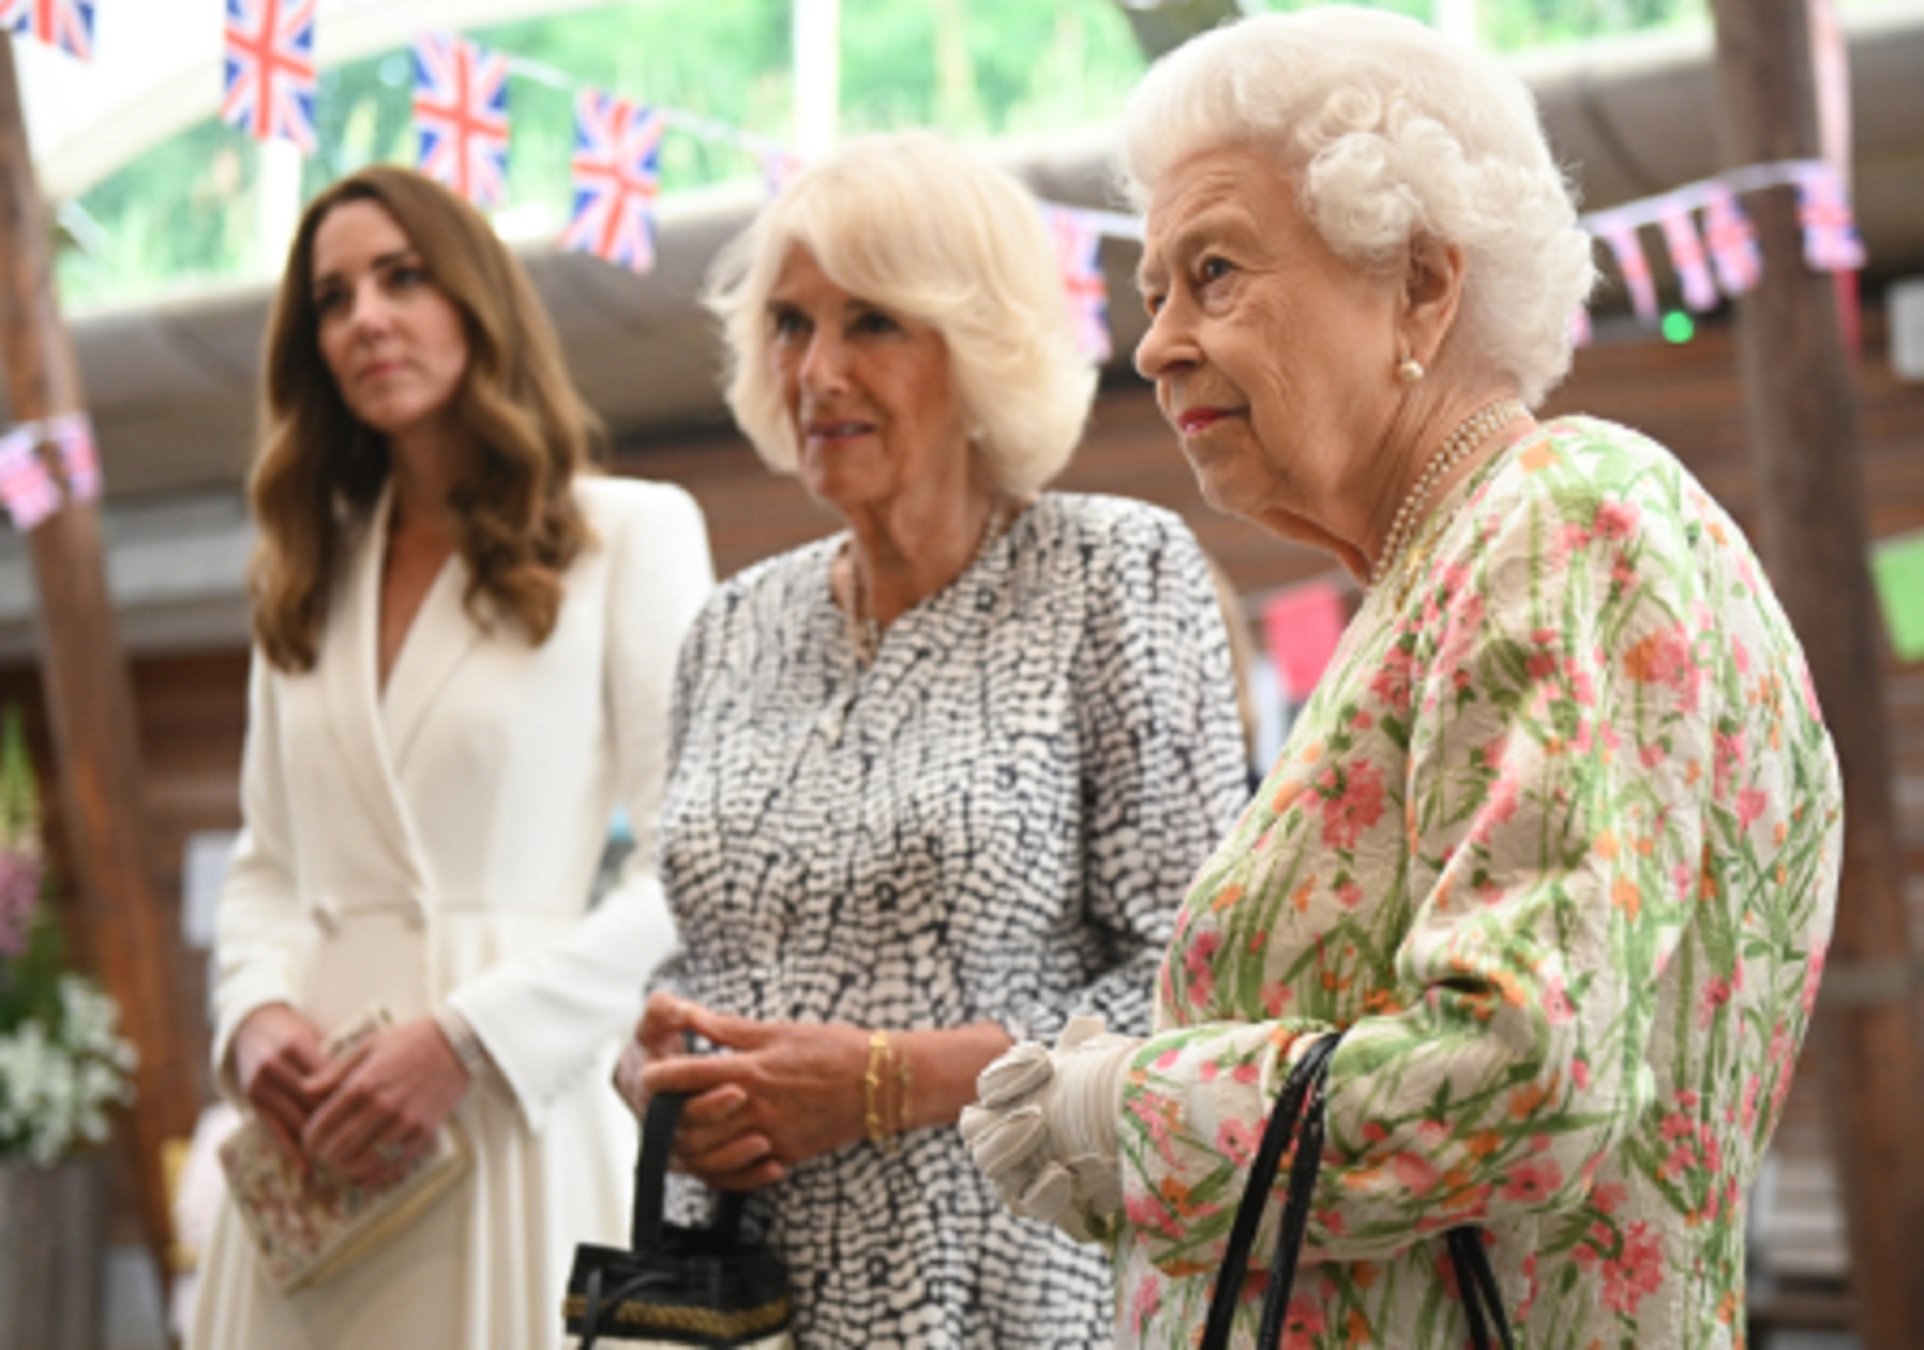 Casa real británica: Camilla Parker-Bowles quiere romper la norma que impuso Isabel II